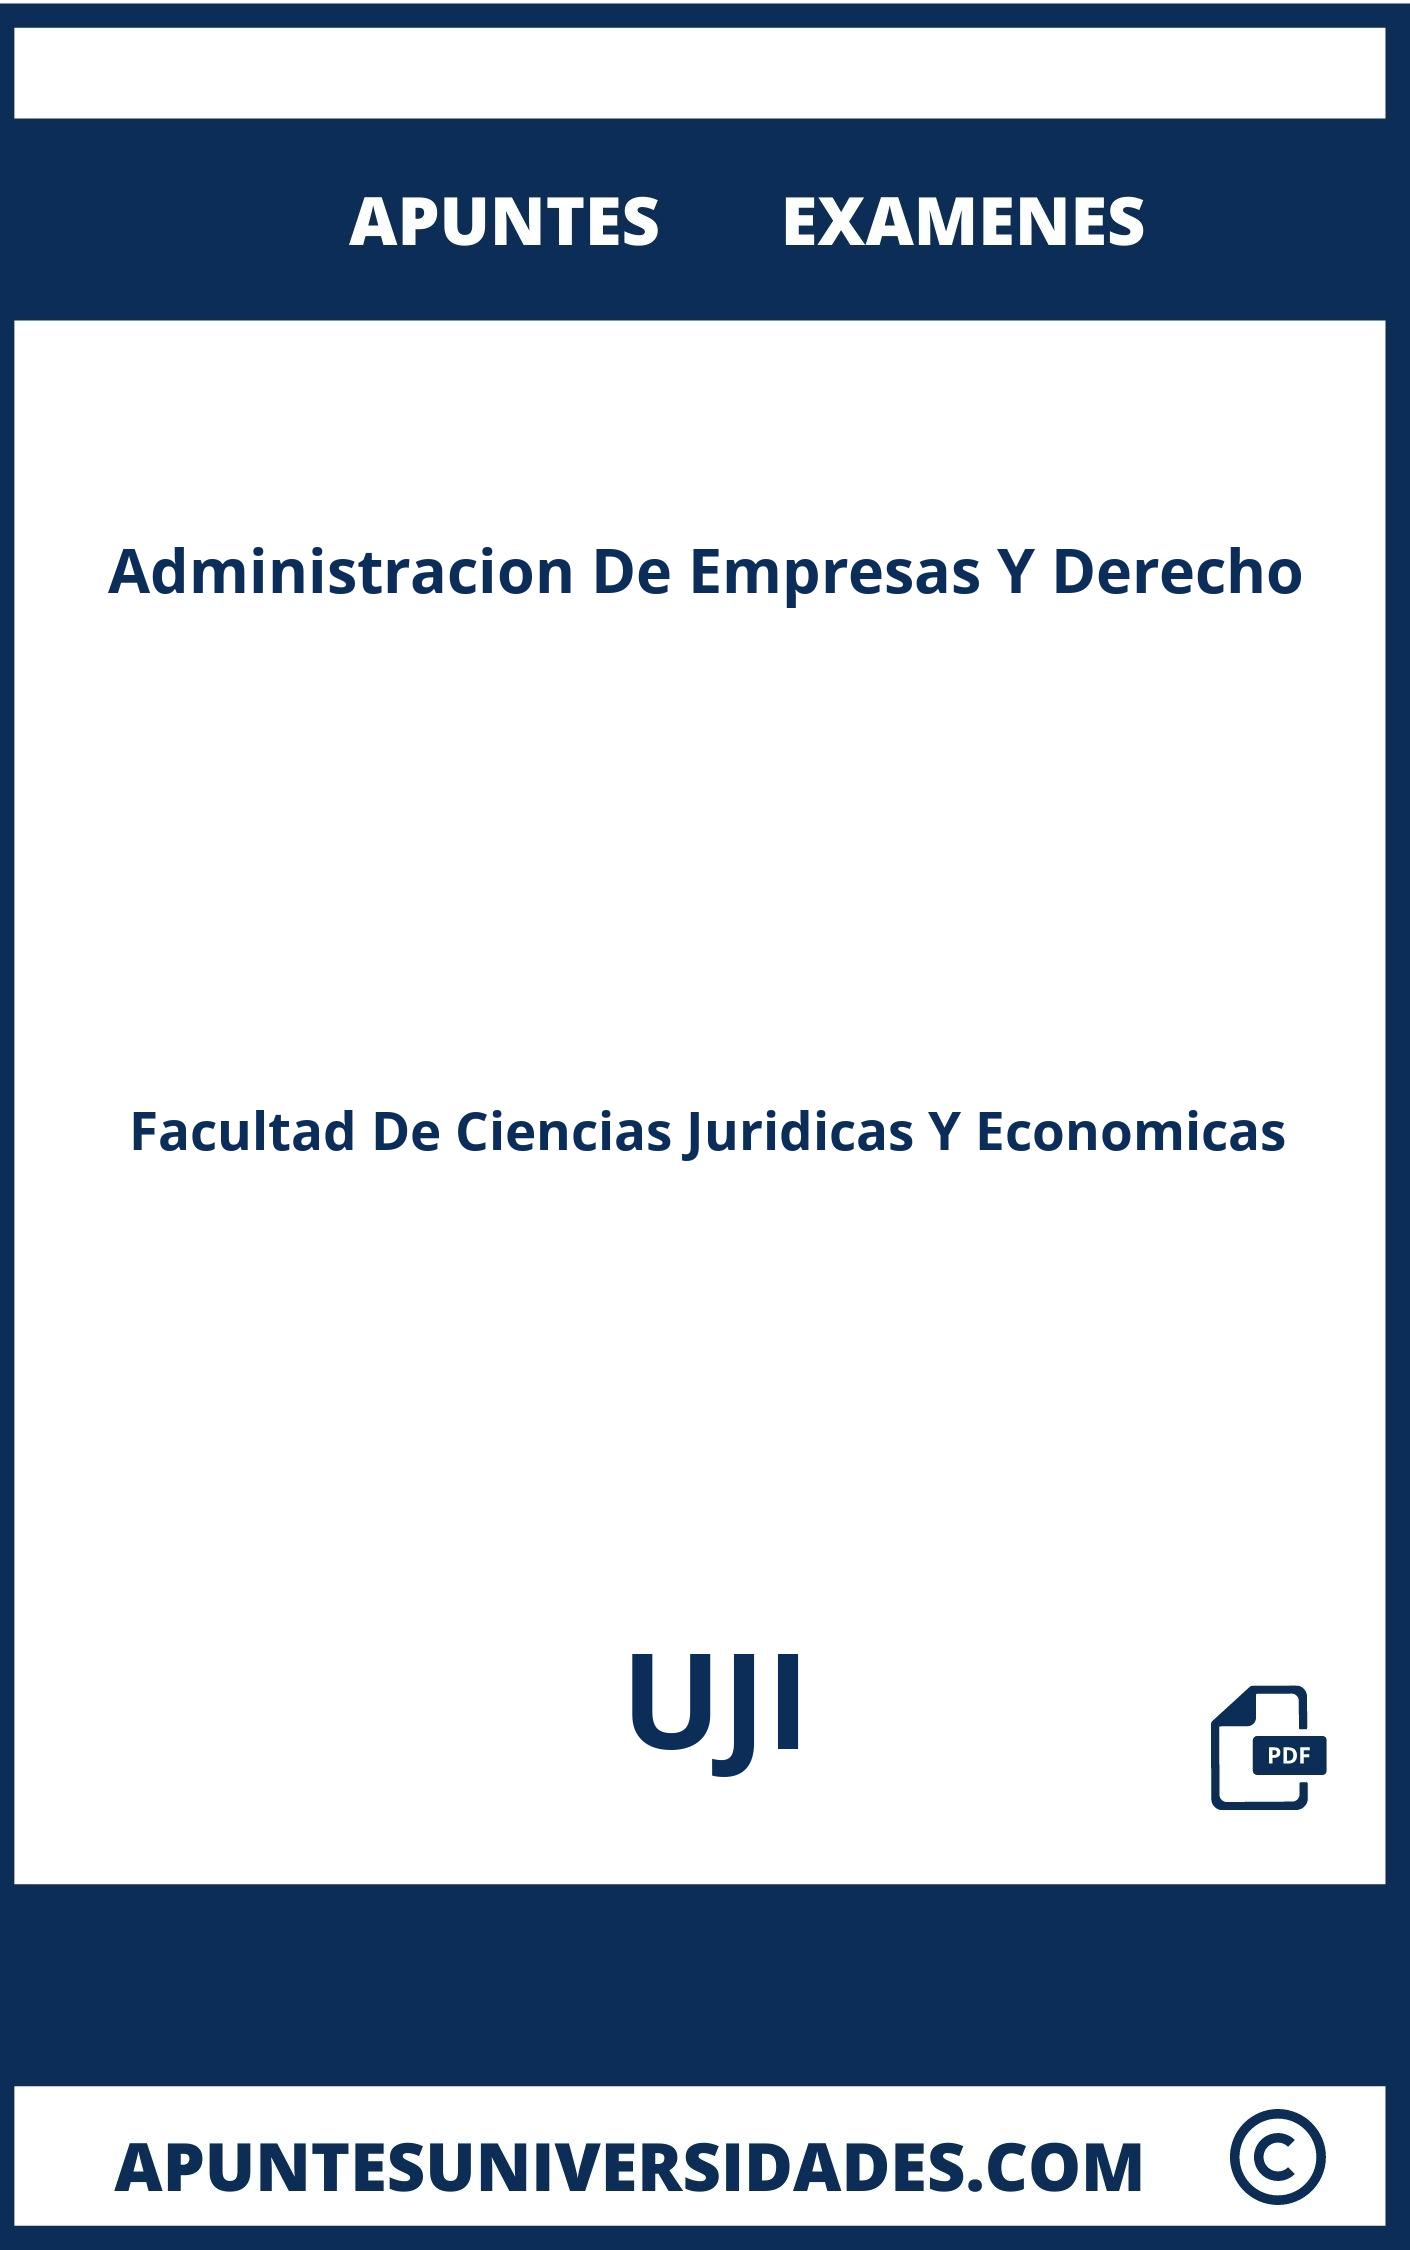 Administracion De Empresas Y Derecho UJI Apuntes Examenes